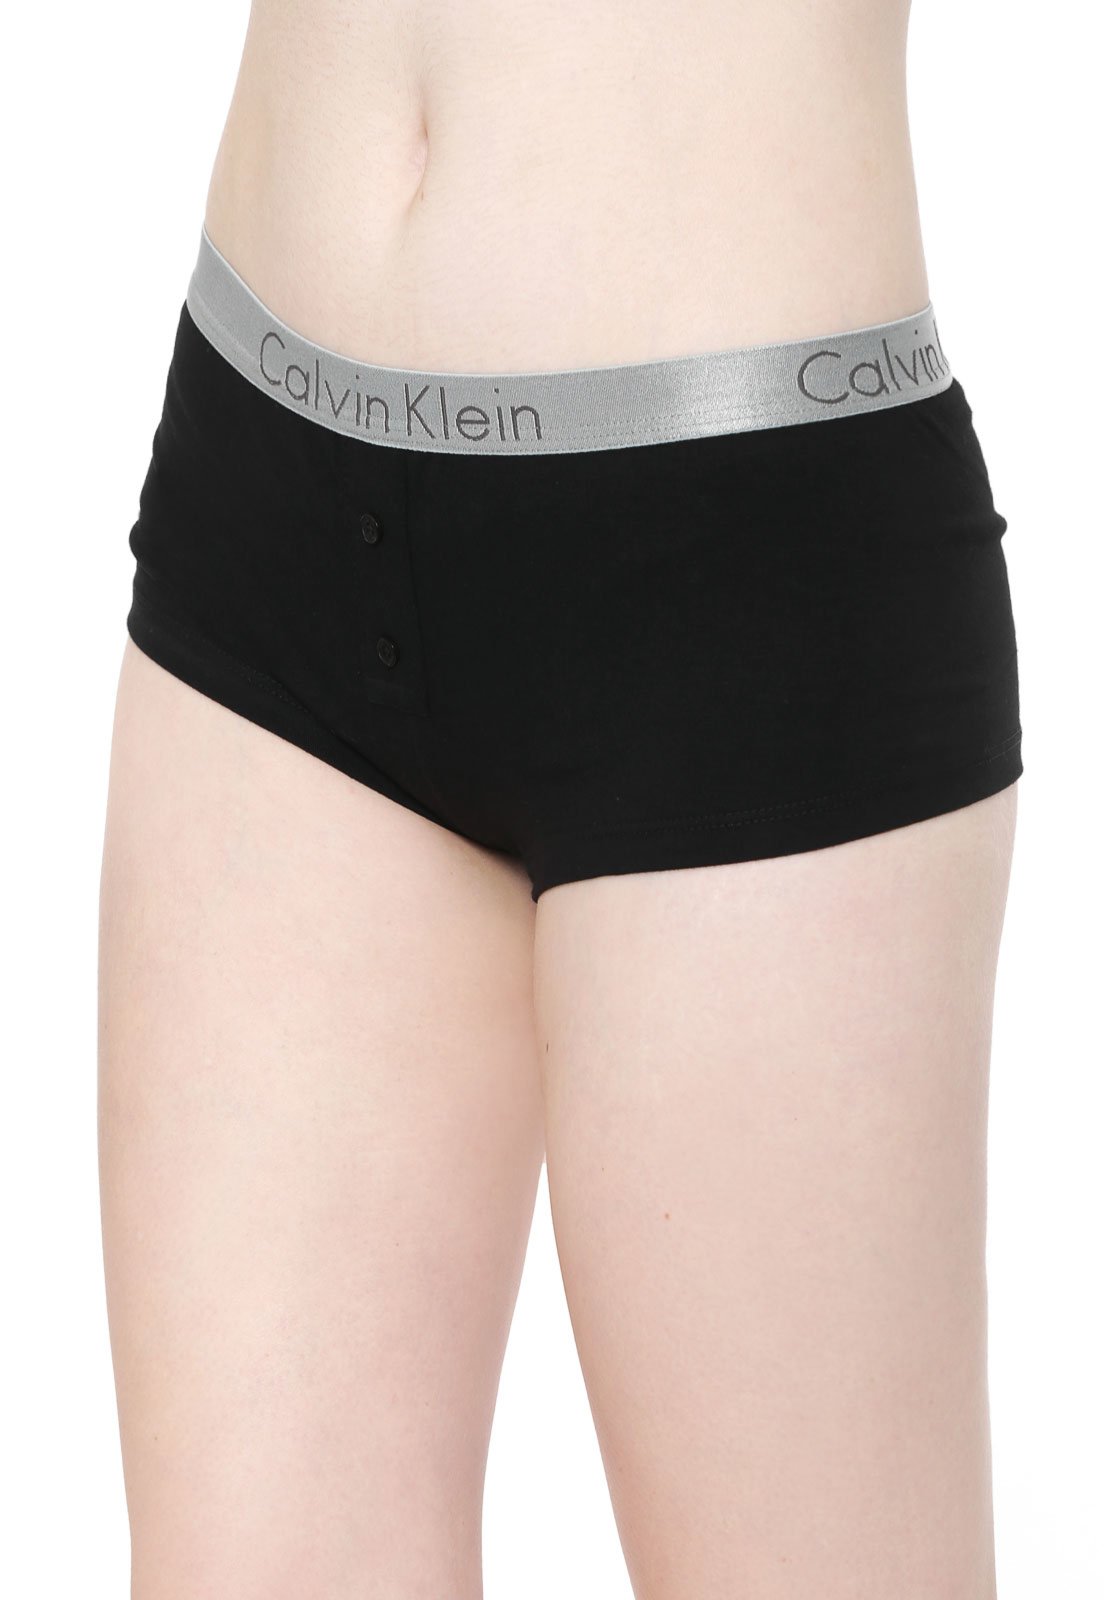 Calcinha Calvin Klein Underwear Biquini Veludo Renda Preta - Compre Agora